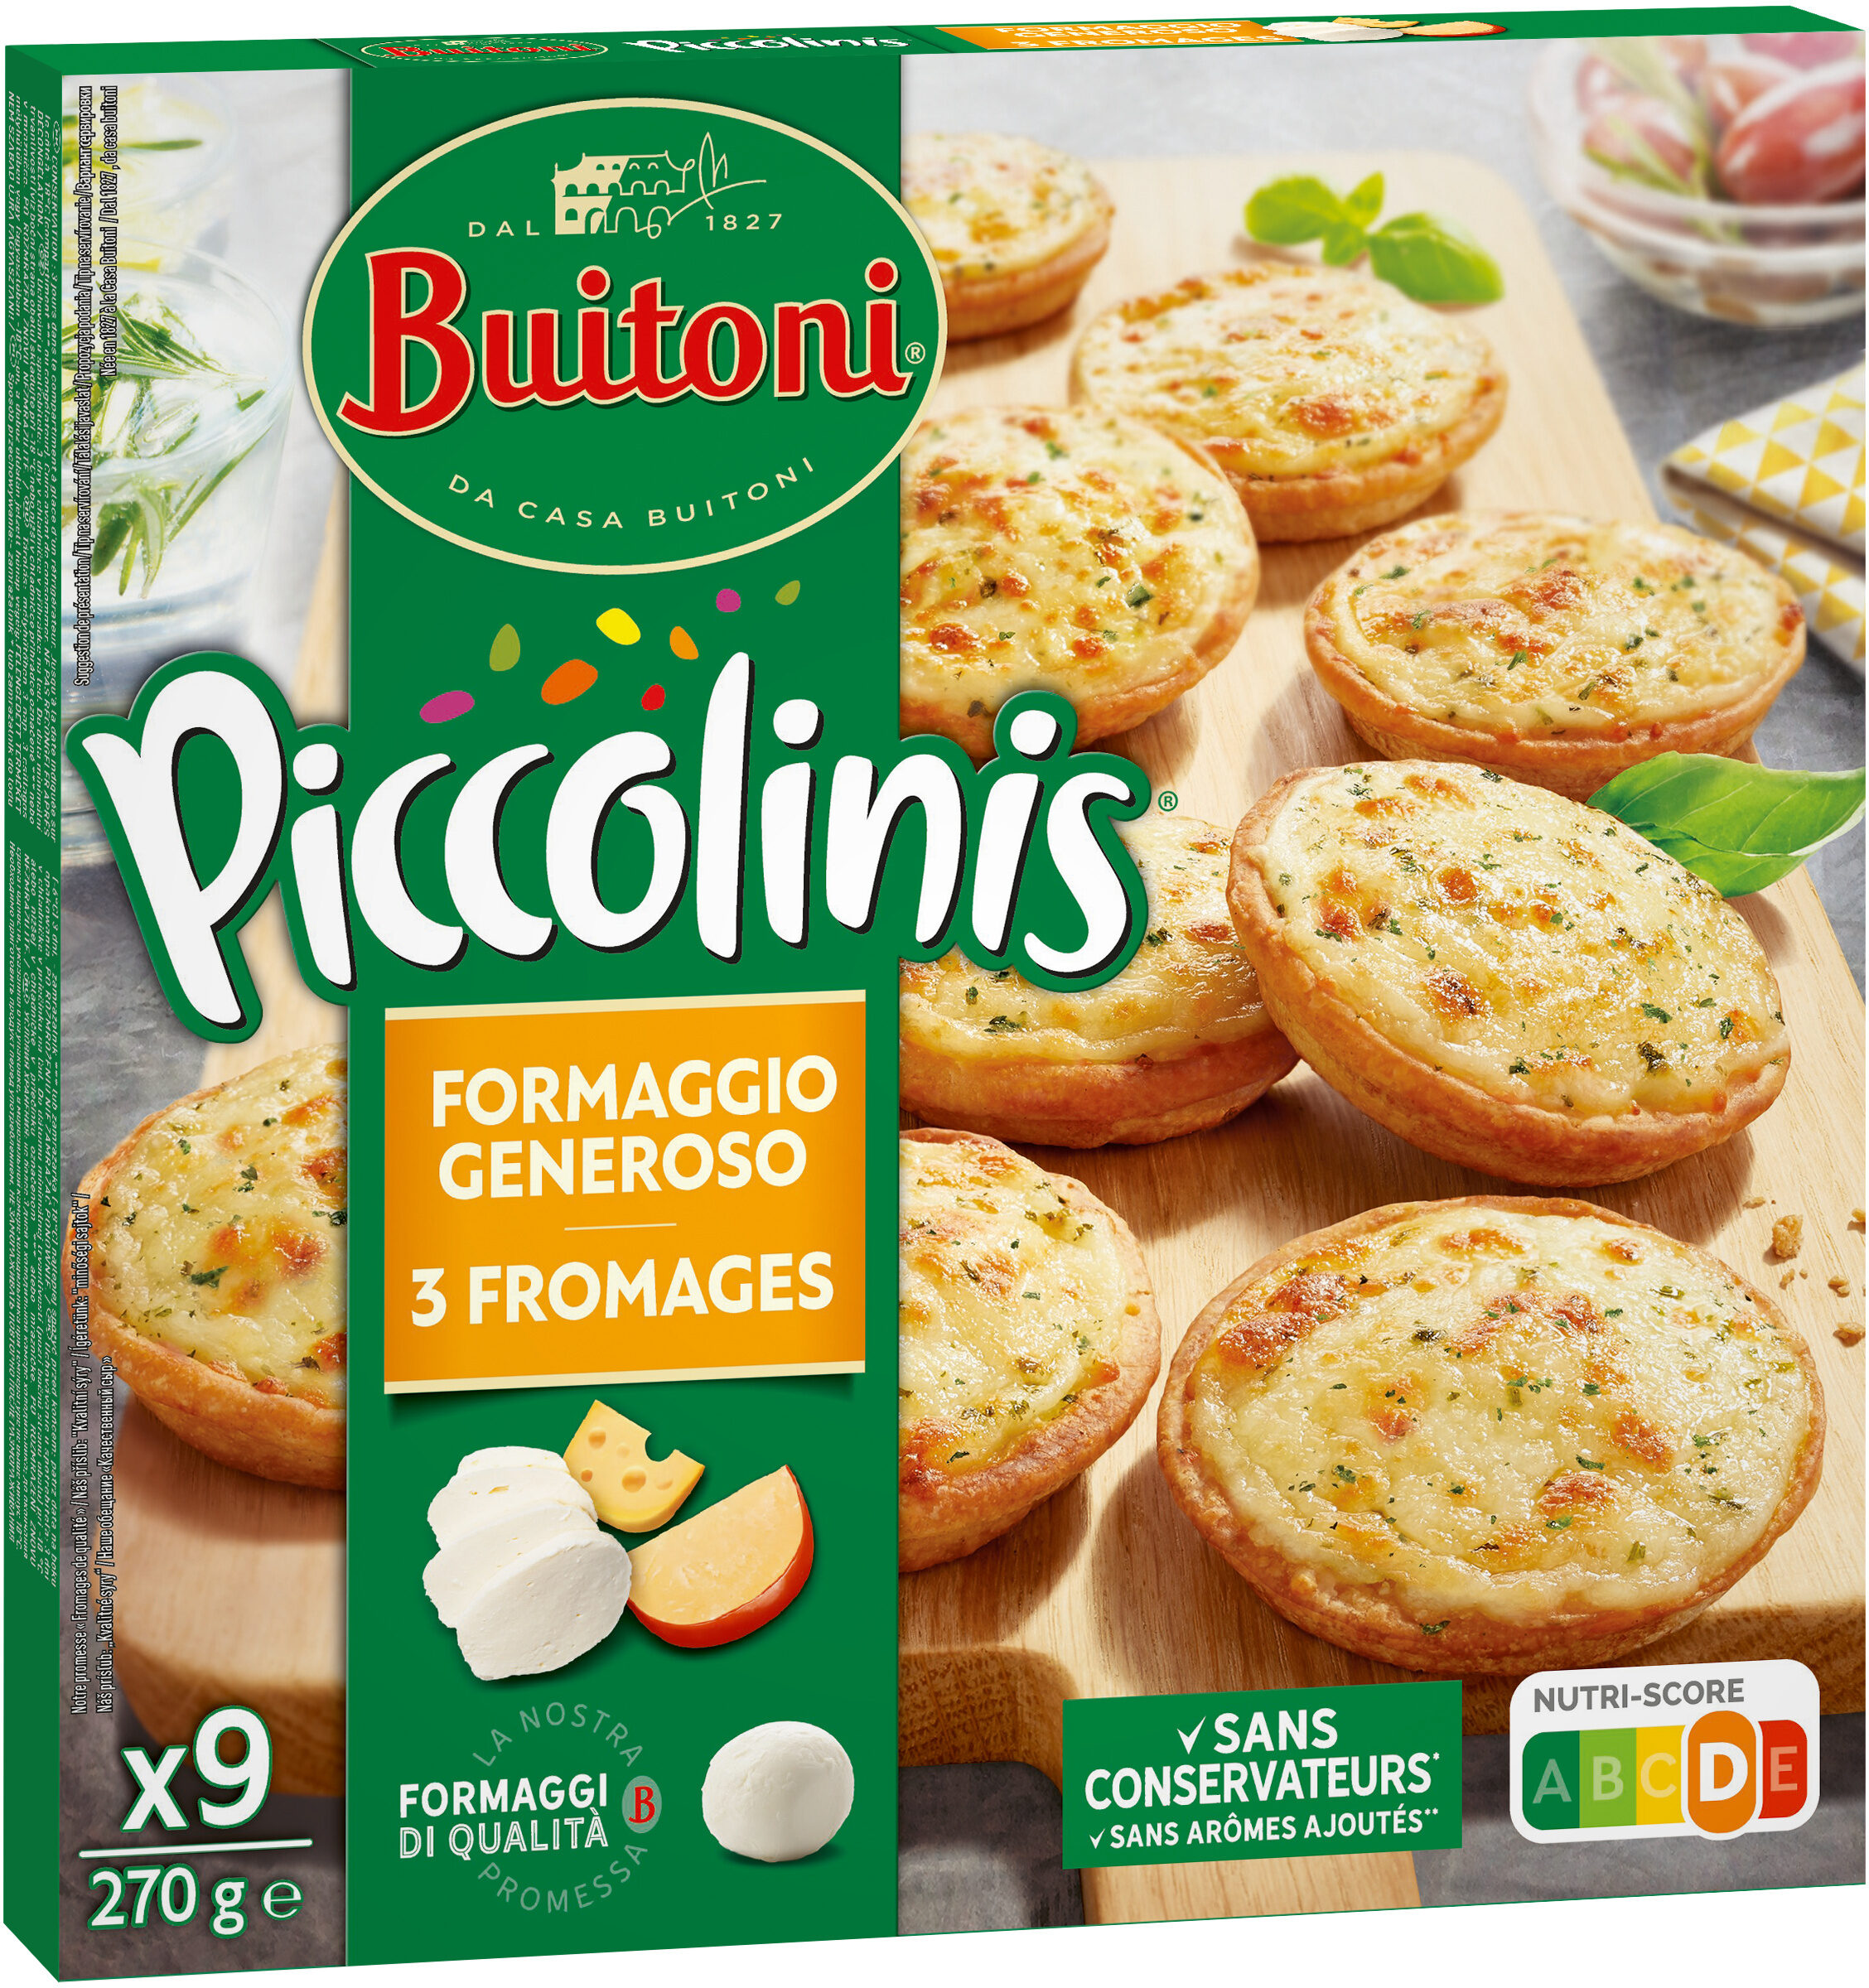 BUITONI PICCOLINIS mini-pizzas surgelées 3 Fromages 270g (9 pièces) - Product - fr